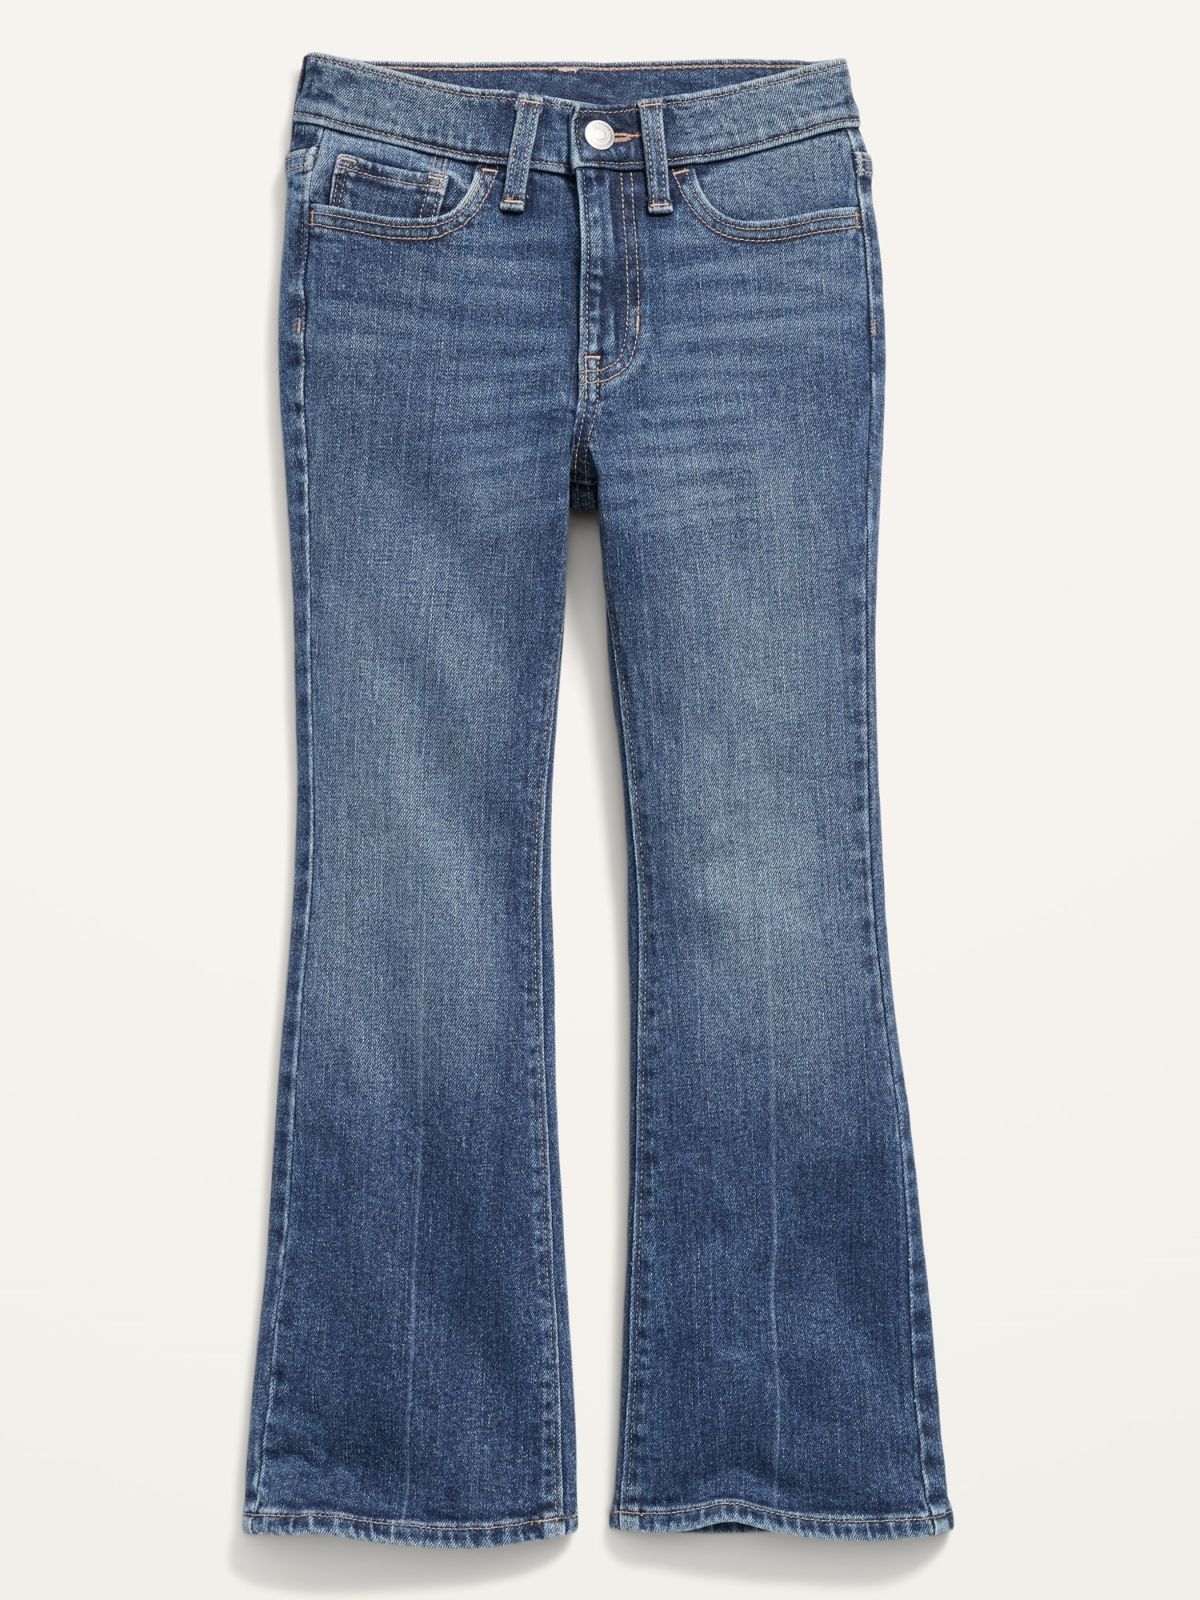  ג'ינס ארוך בגזרה גבוהה של OLD NAVY